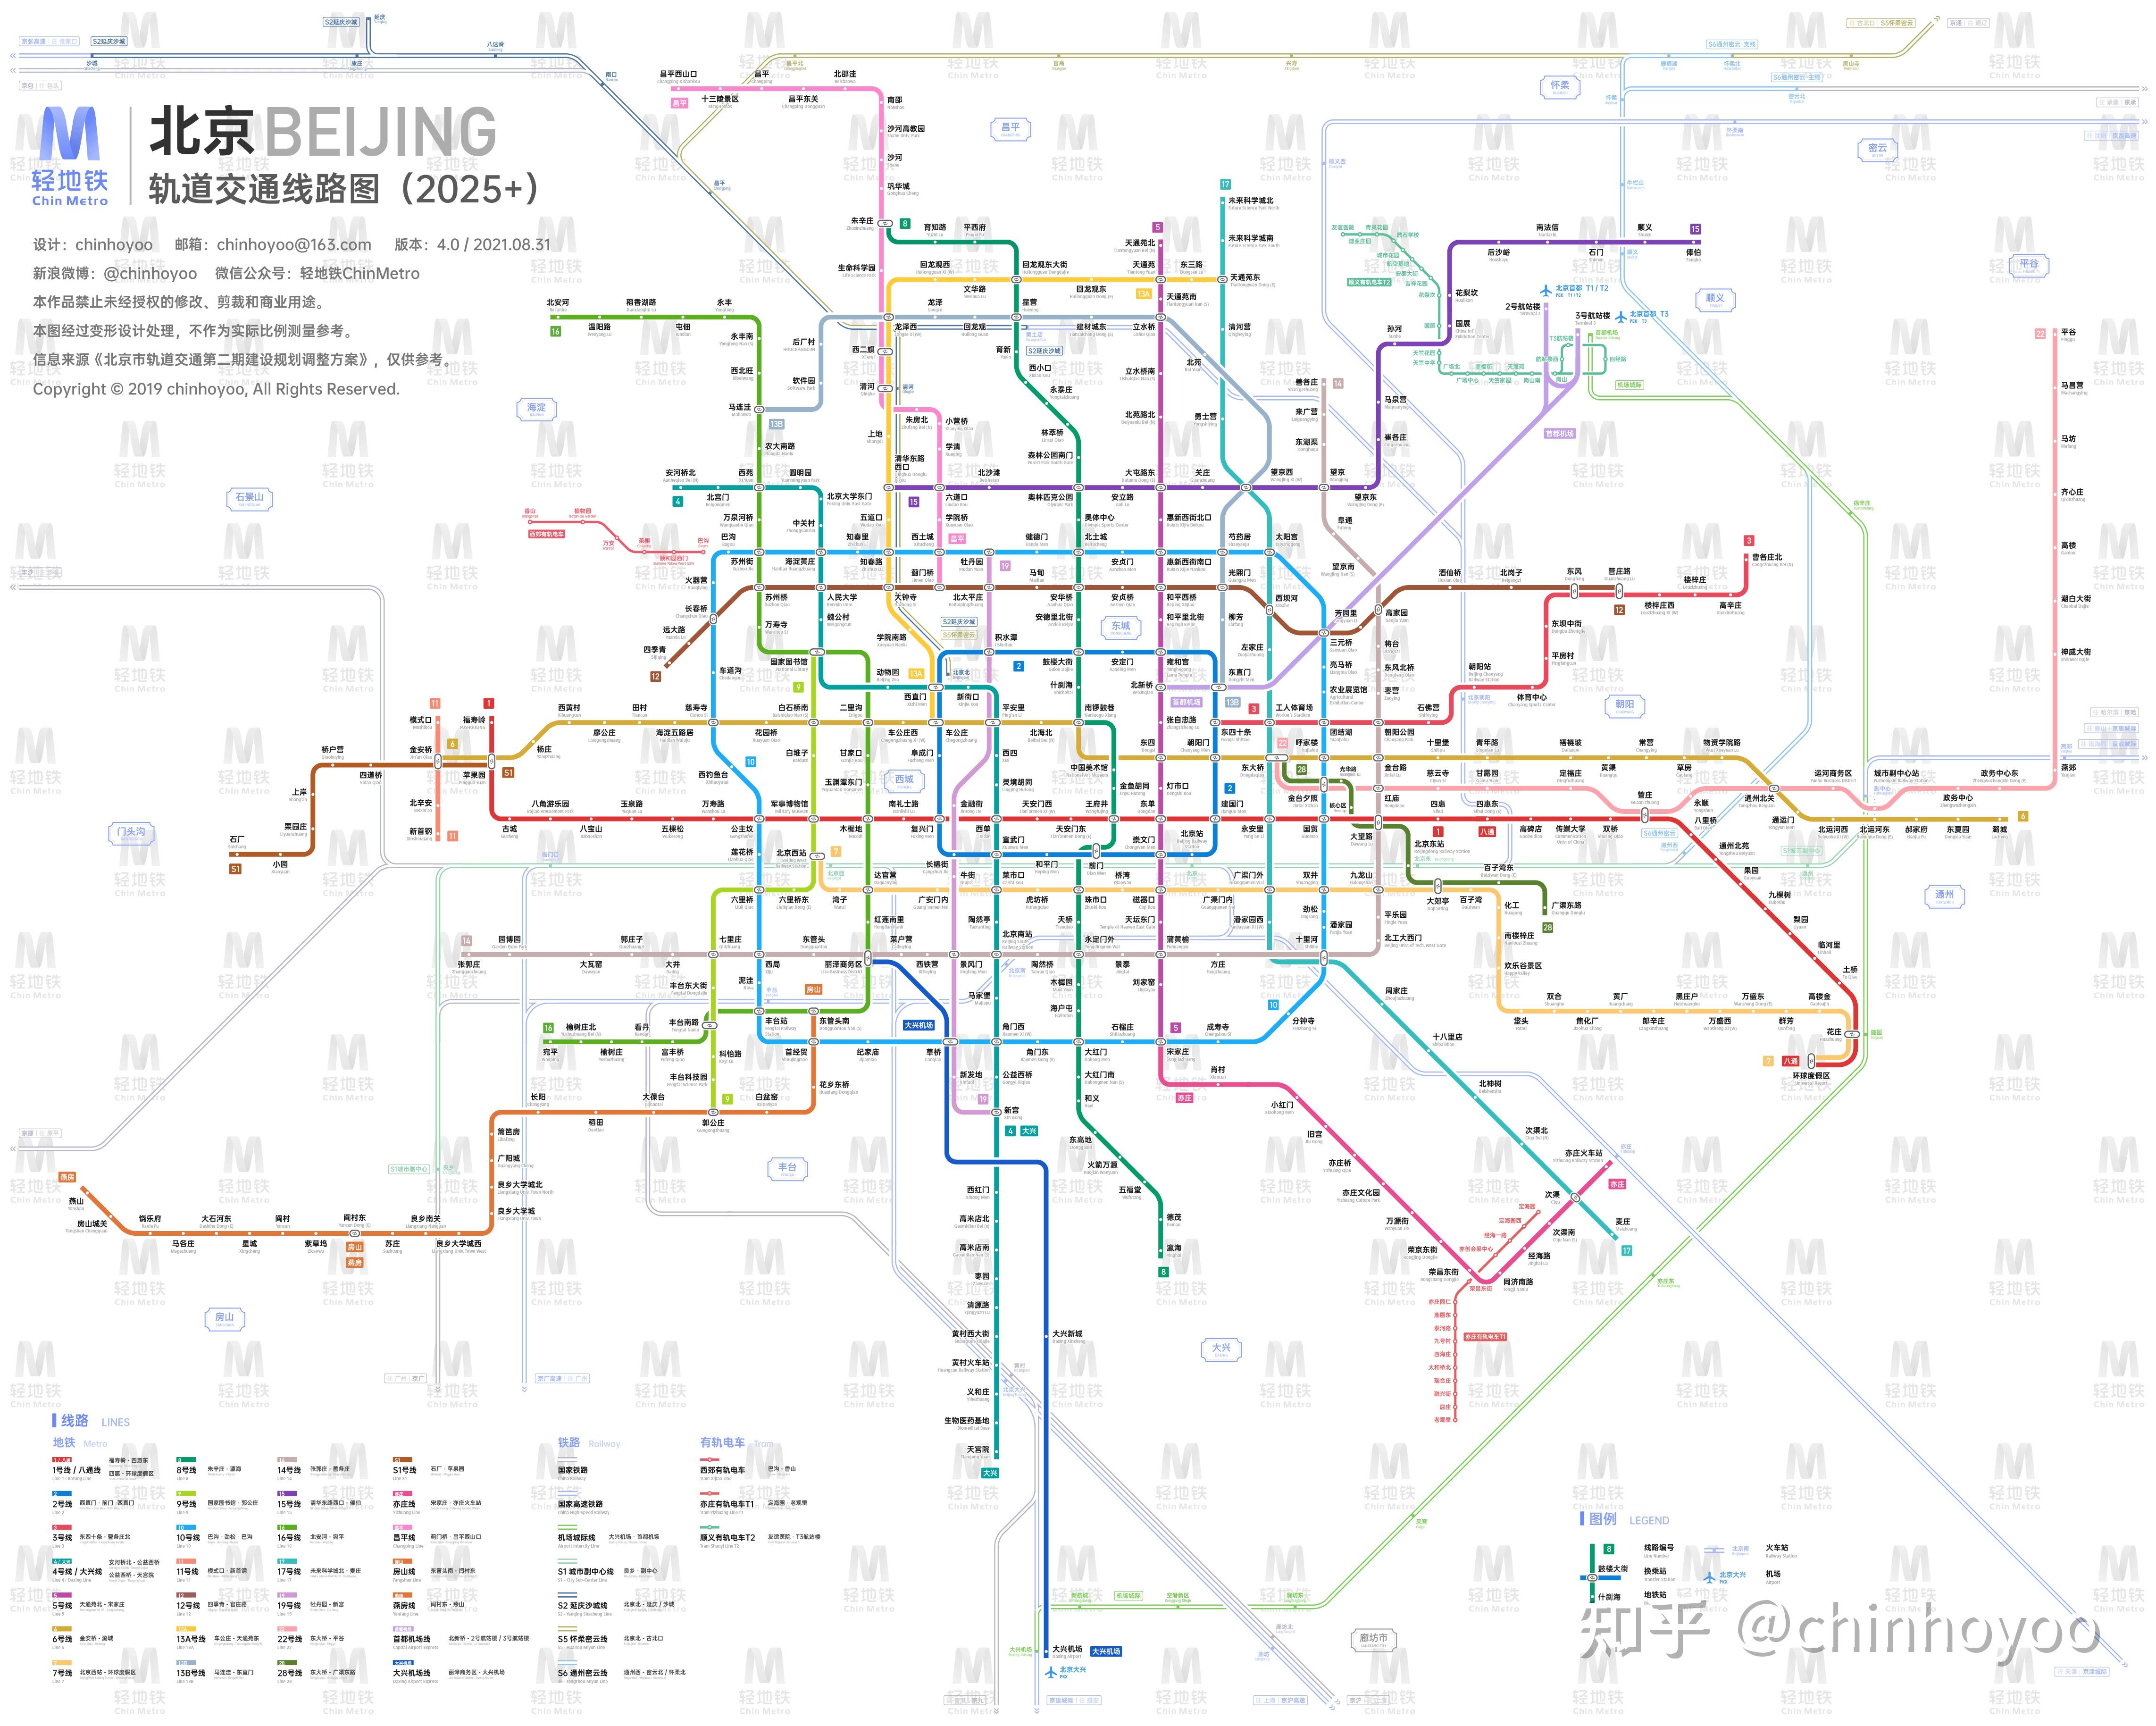 北京地铁远景规划2035图片